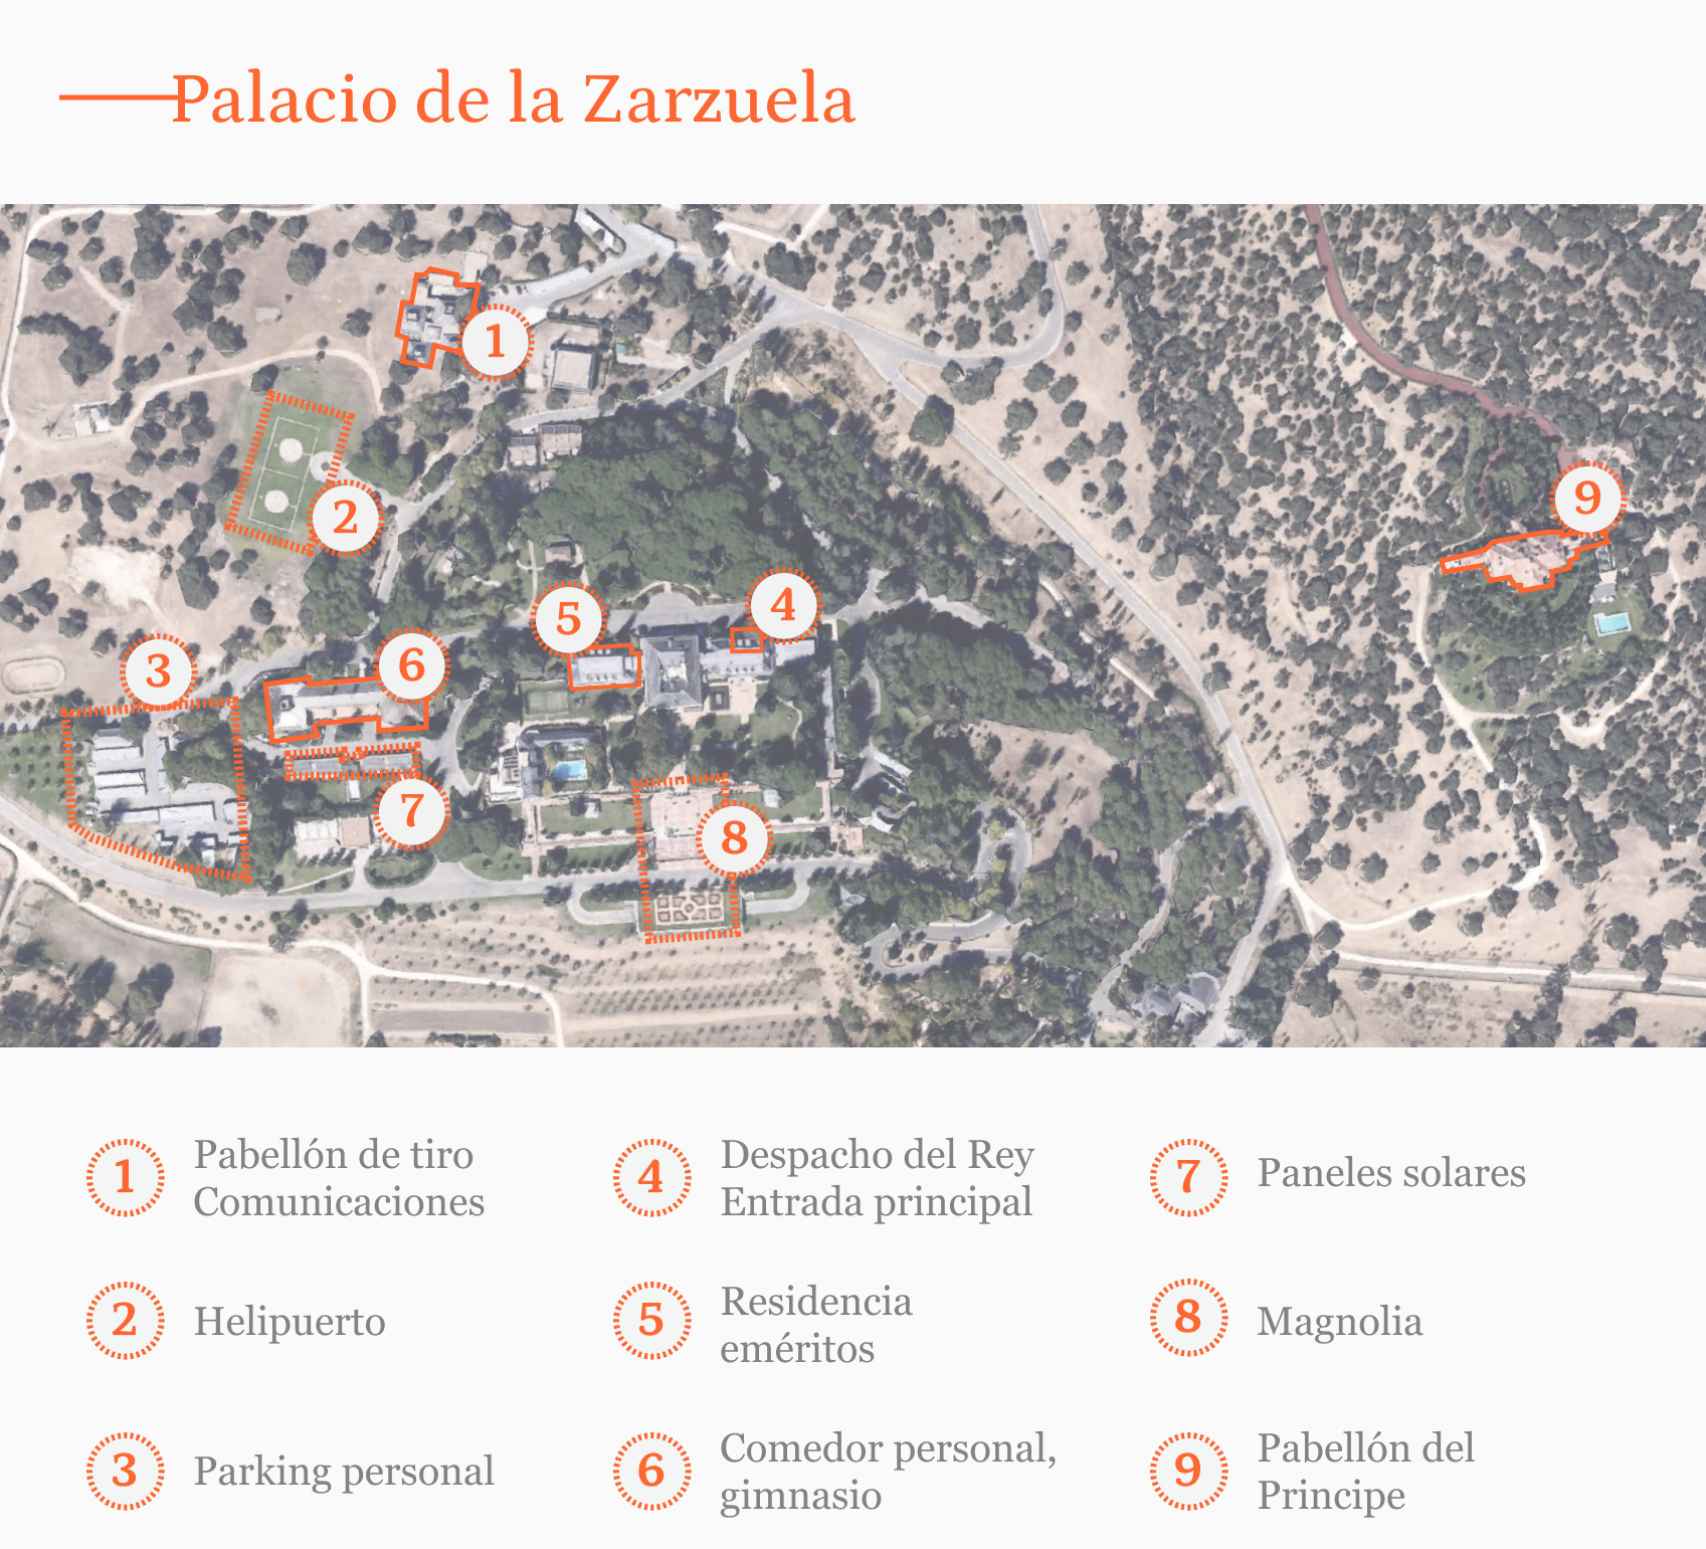 'Mapa' del recinto de la Zarzuela, con cada edificio señalado.